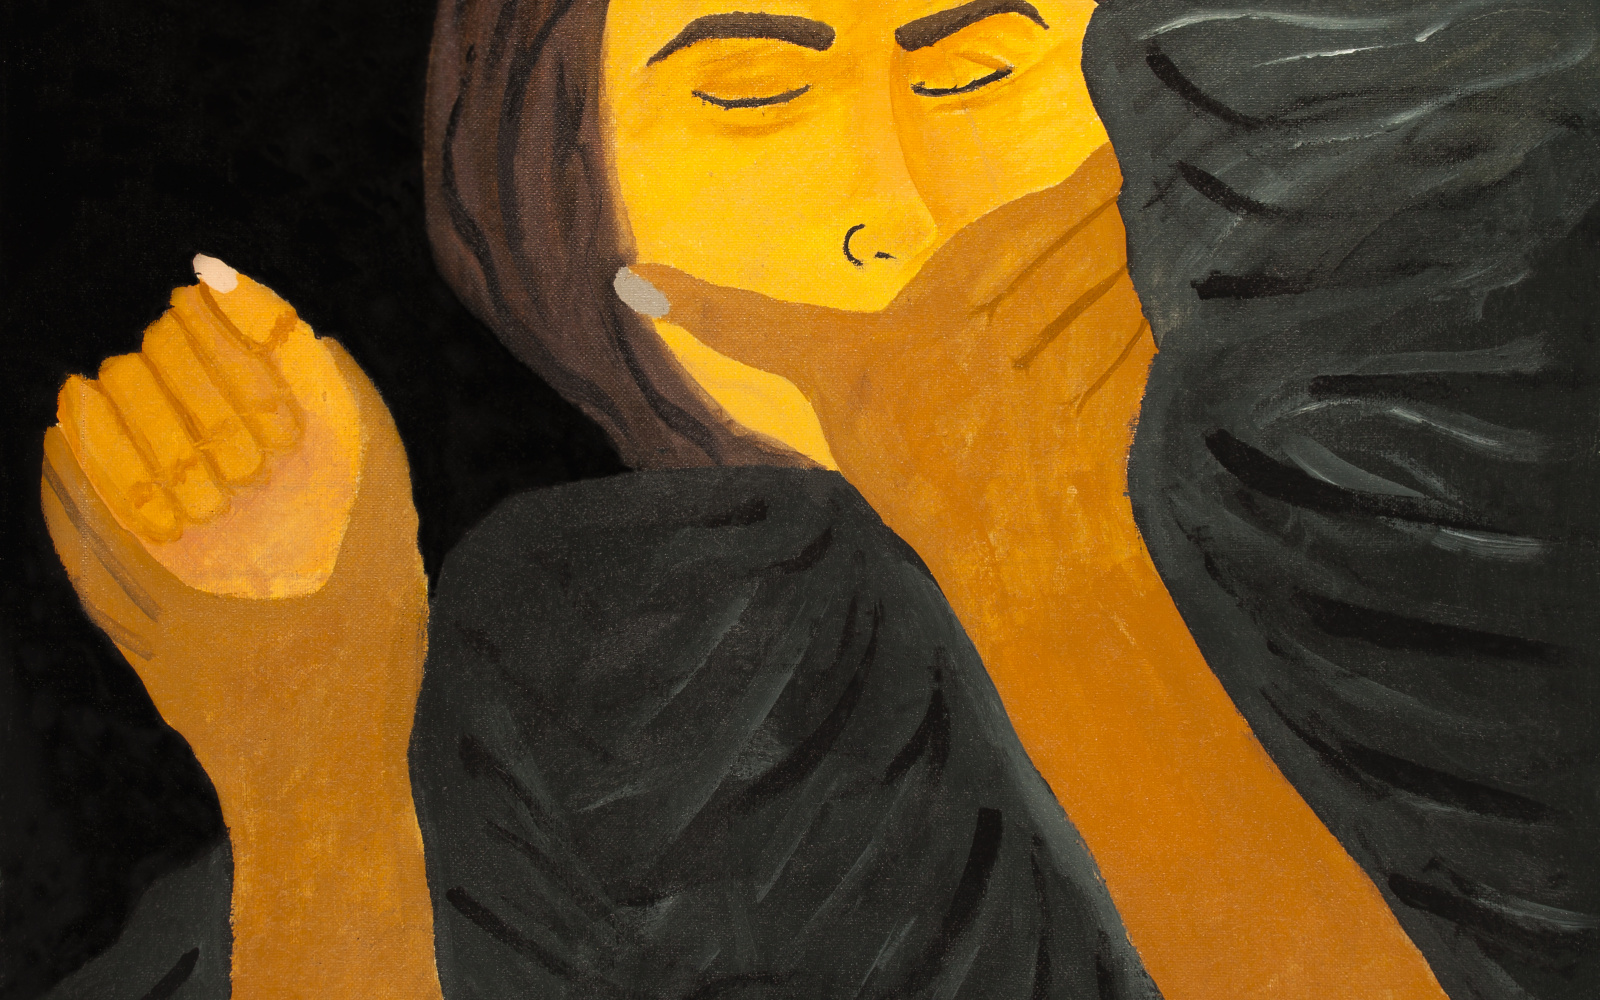 Zu sehen ist ein Gemälde mit einem Ausschnitt einer Frau, deren Mund von einer Hand zugehalten wird und deren rechte Hand gepackt wird. 